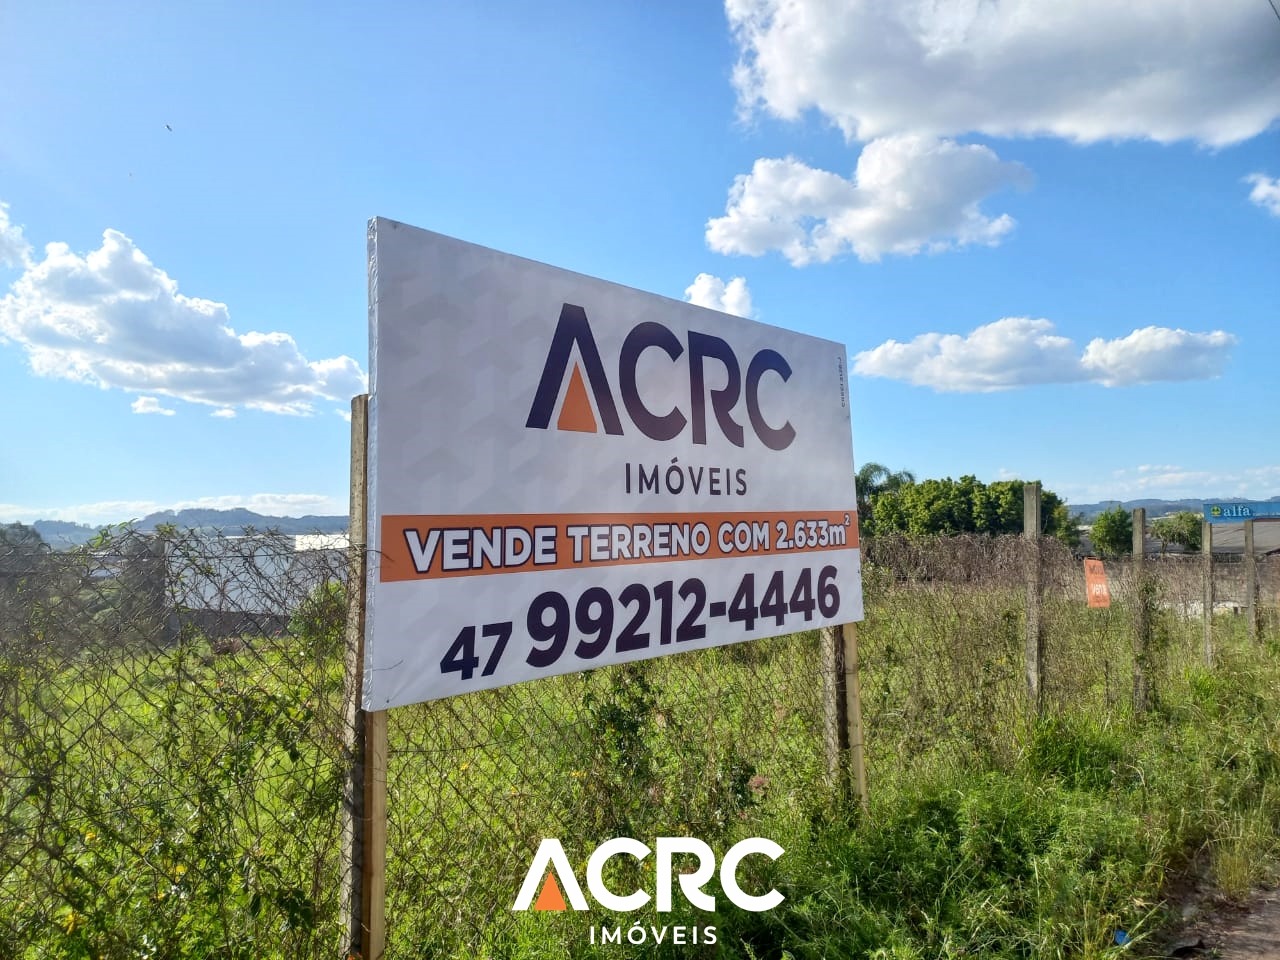 ACRC Imóveis - Terreno à venda em Chapecó/SC